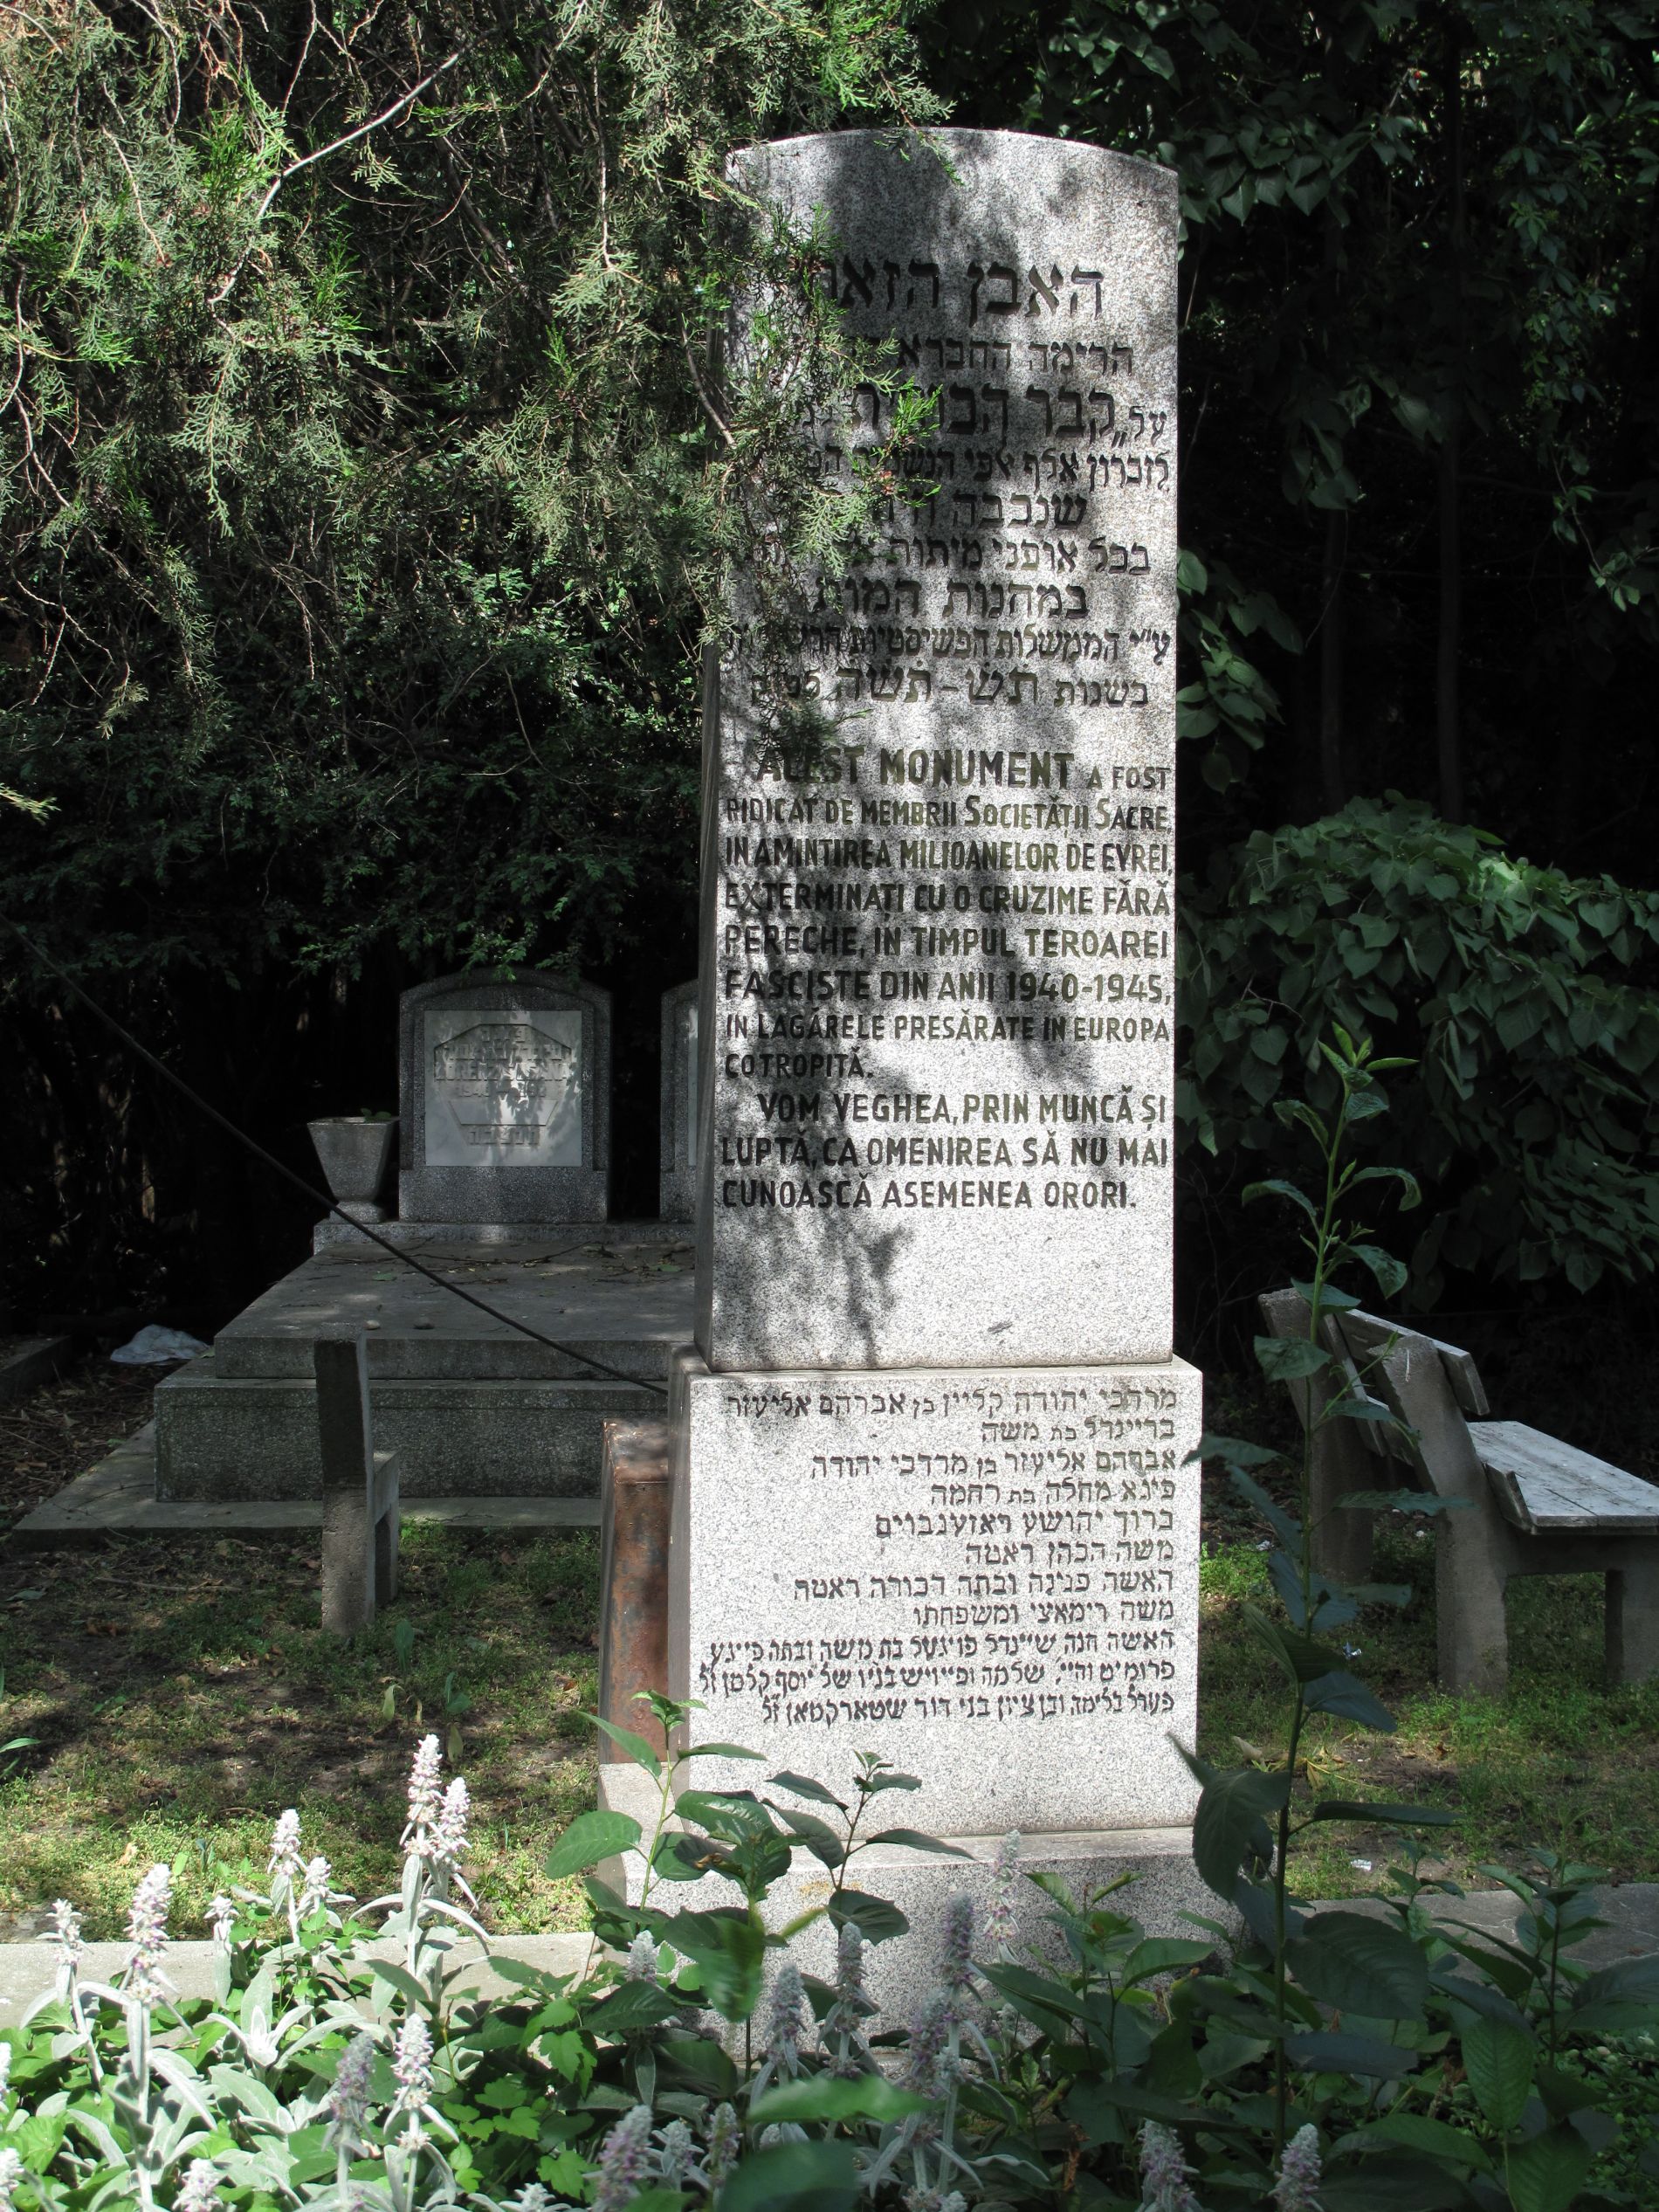 Monumentul în memoria Holocaustului din cimitirul evreilor din Timişoara